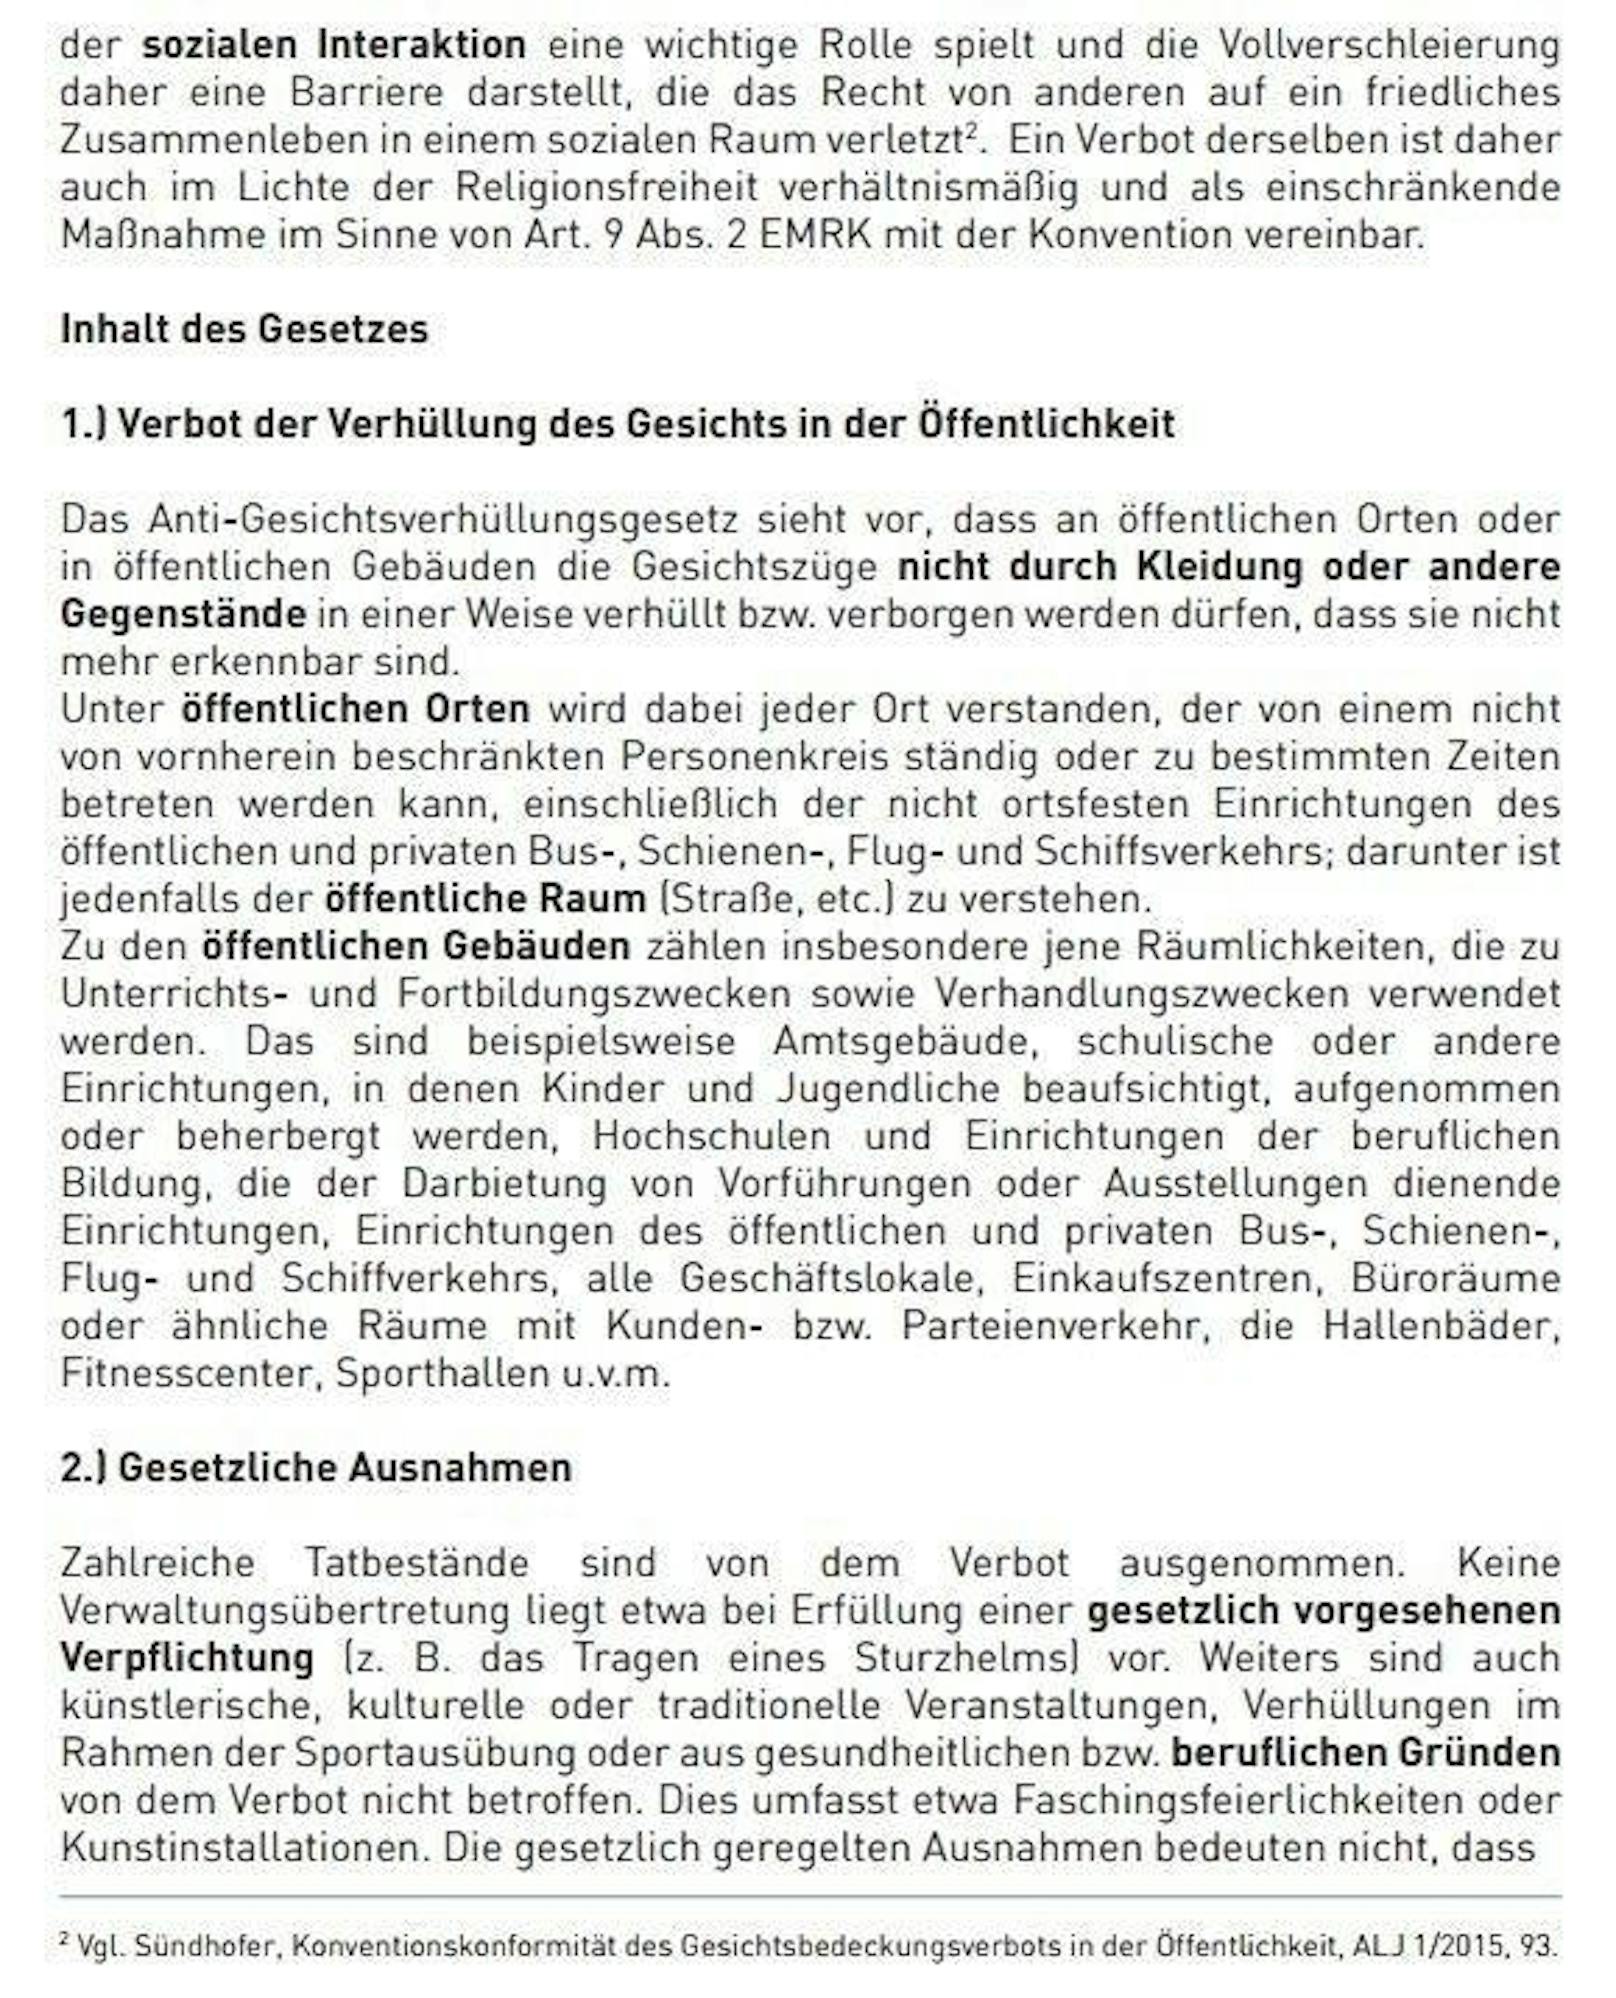 Das Burka-Verbot gilt ab 1. Oktober in Österreich: Hier das Gesetz im Wortlaut und alle Details dazu.